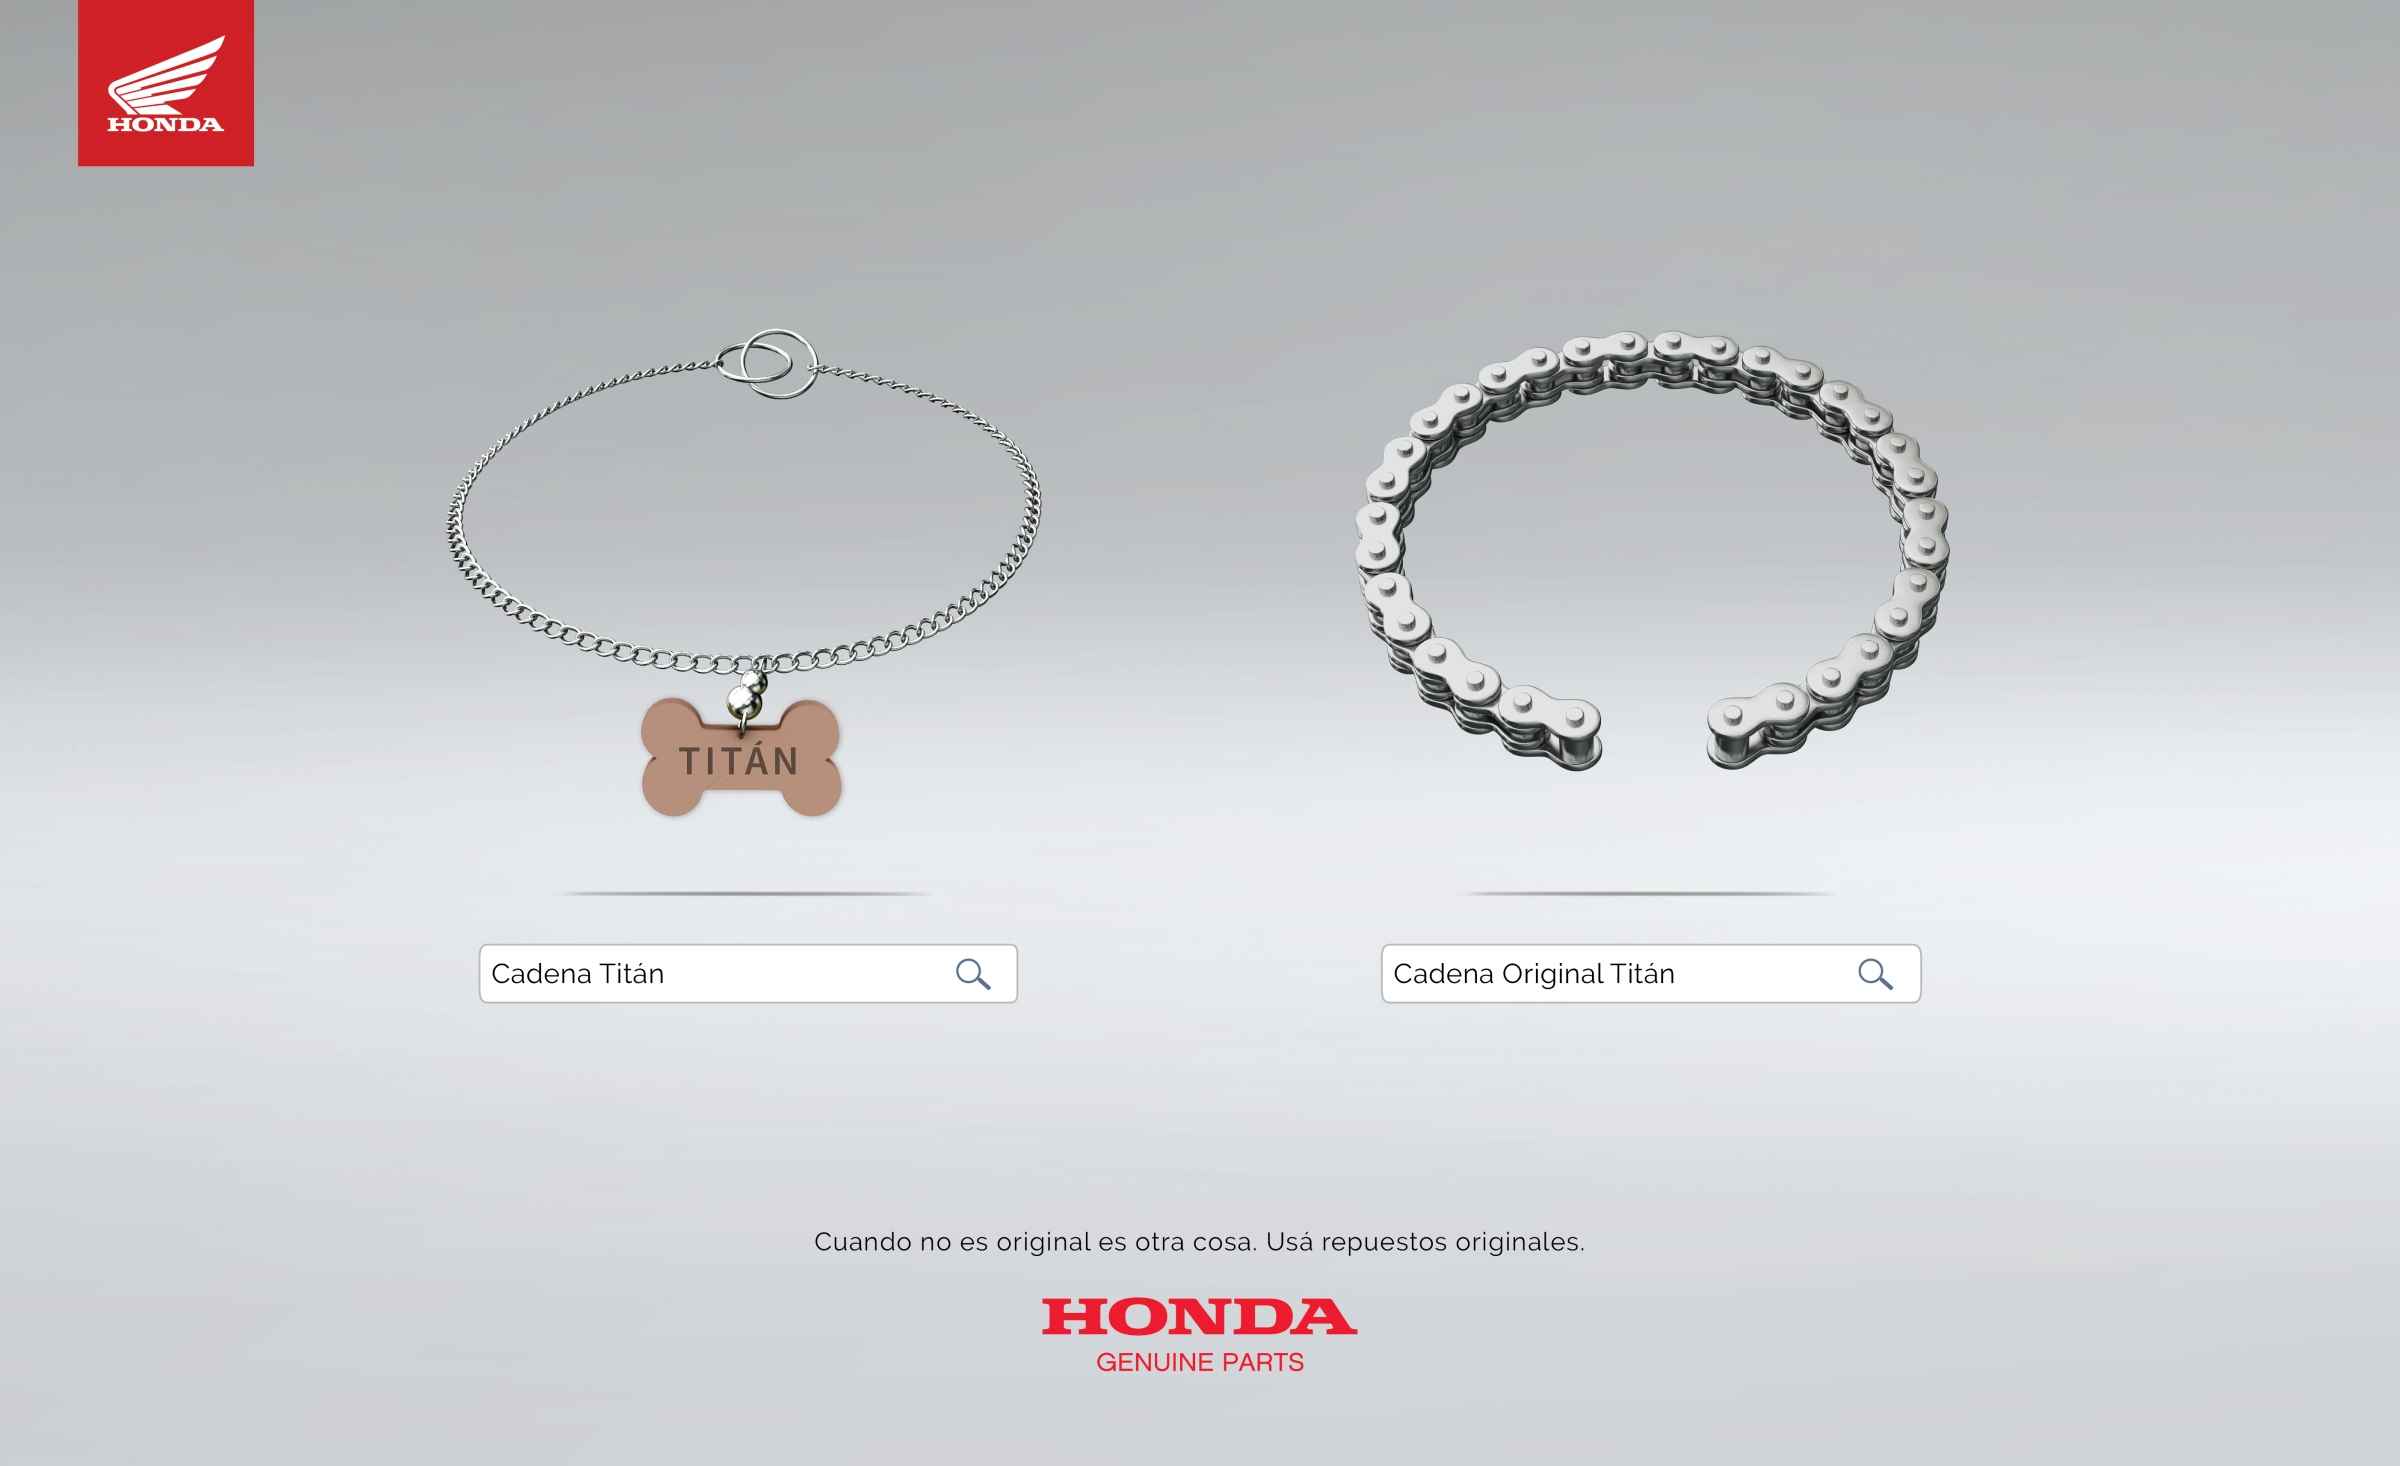 Portada de “Si no es original, es otra cosa”, la nueva campaña creada por Almacén para Honda Genuine Parts